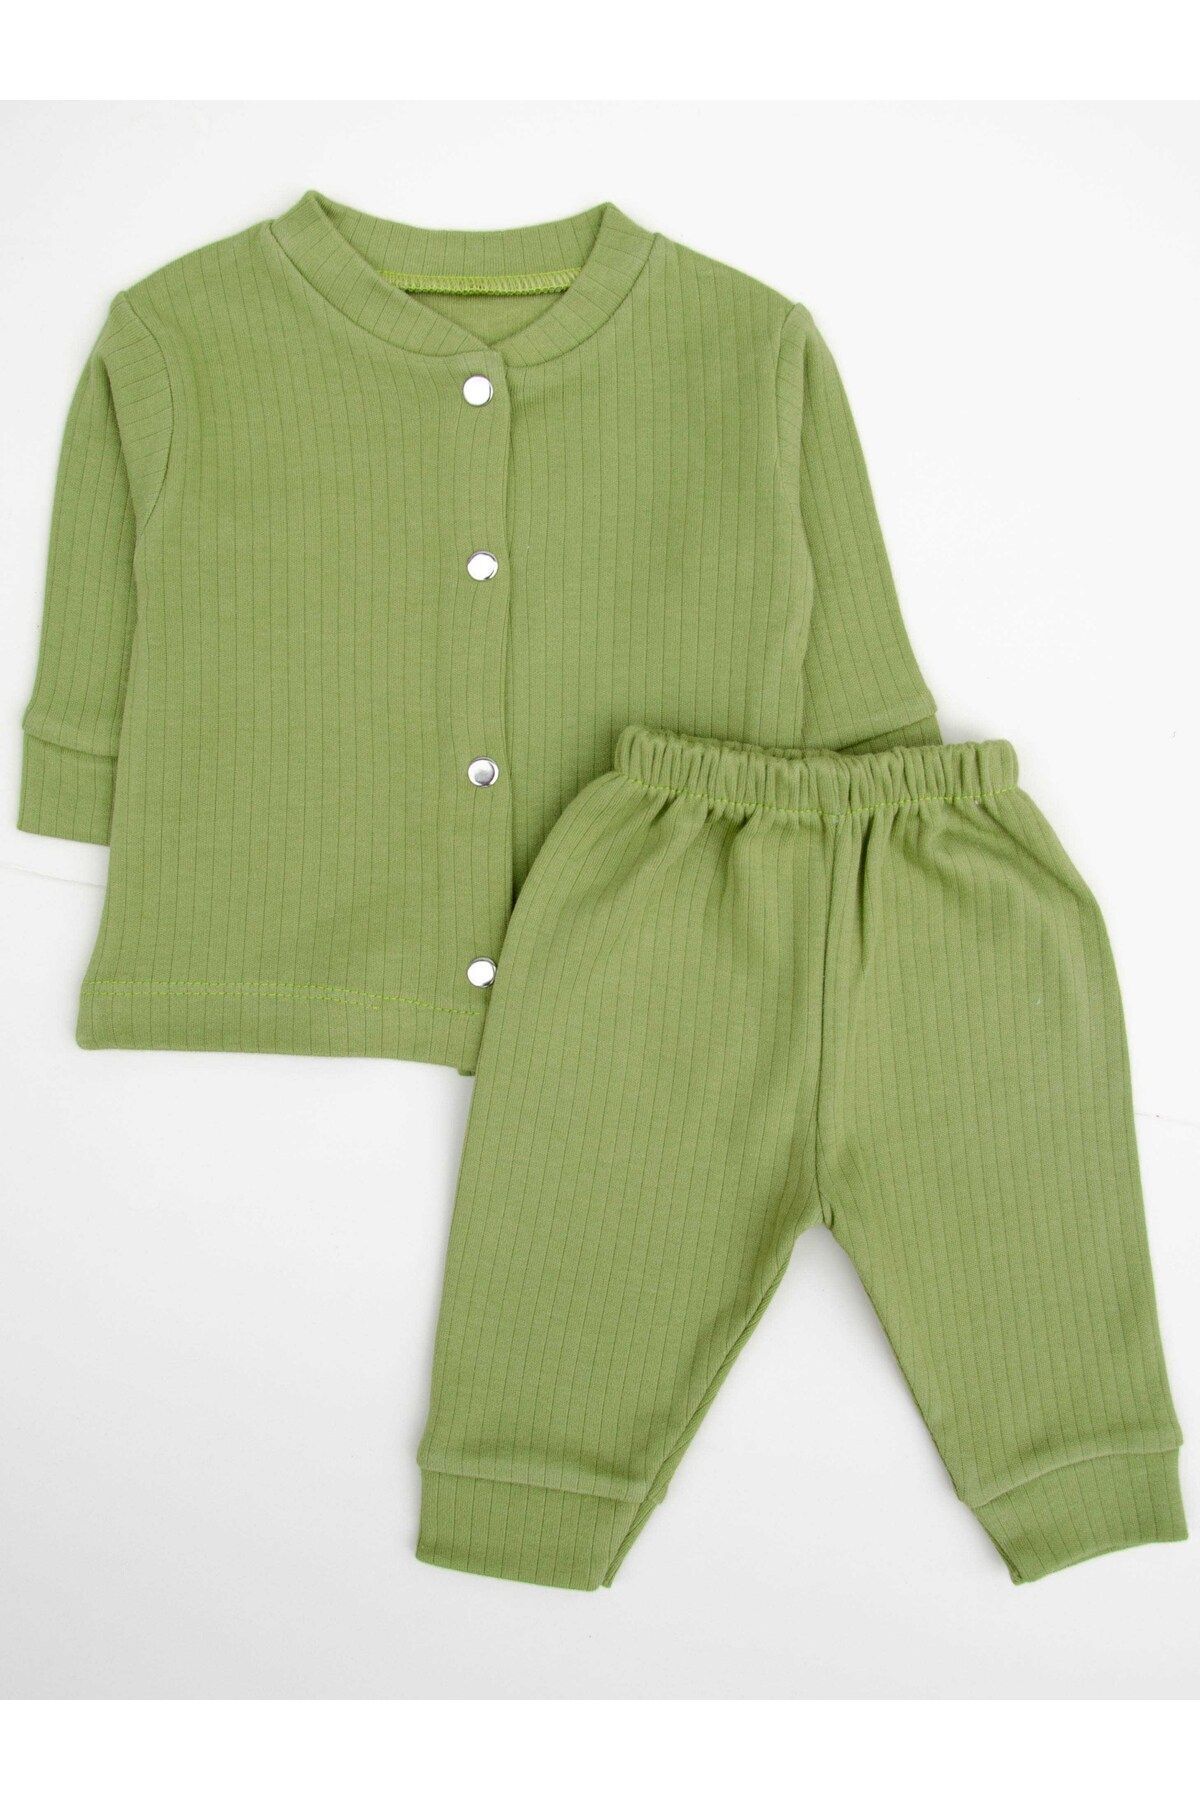 Oz Baby Ozbaby Organik %100 Pamuklu Fitilli Bebek Takım - Kız Bebek Ve Erkek Bebek Mevsimlik Kıyafet Seti